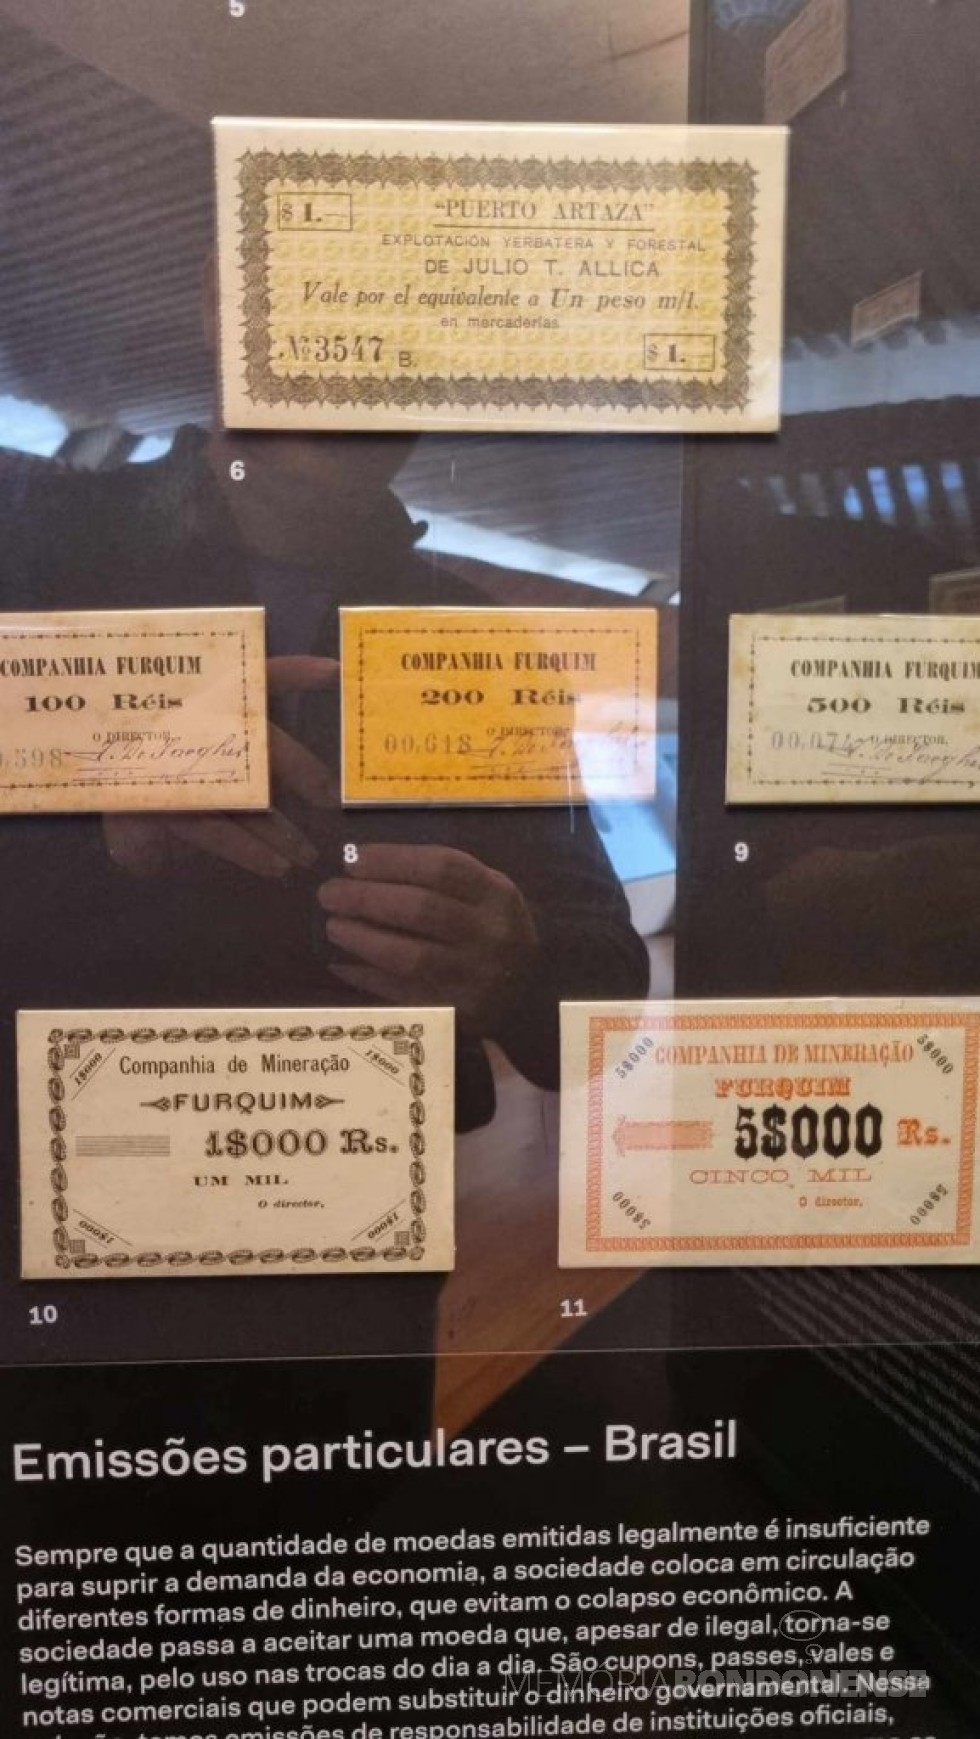 || Cédulas monetárias emitidas por empresas, com destaque para Puerto Artaza, na seção de Numismática do Museu do Ipiranga.
Imagem: Acervo e crédito Adriano Ramon Lani - FOTO 23 - 